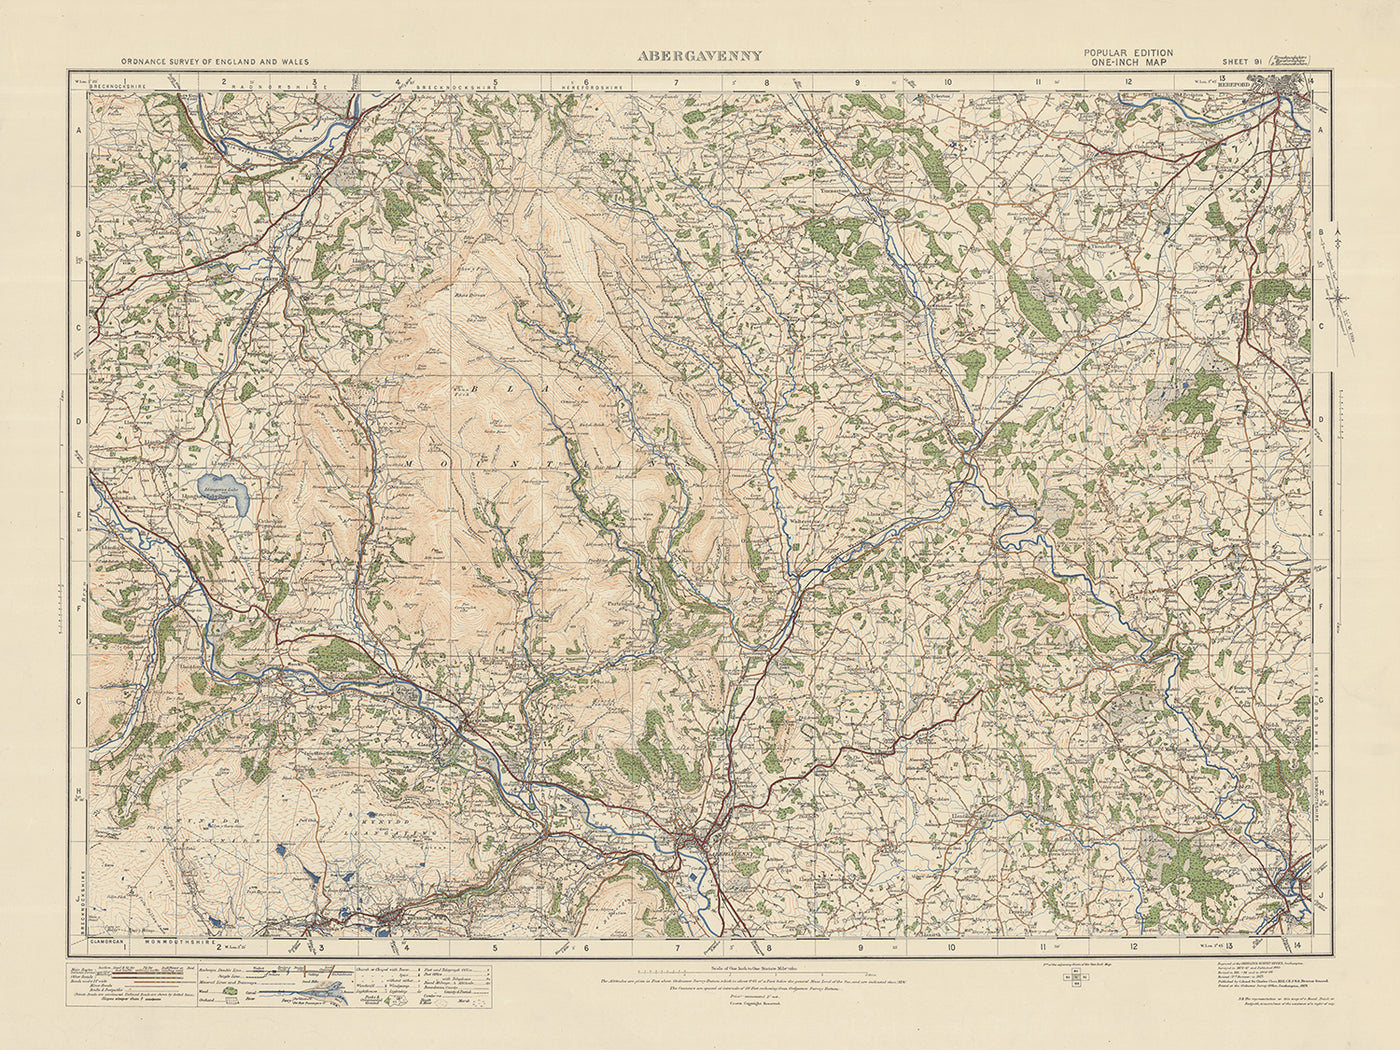 Carte Old Ordnance Survey, feuille 91 - Abergavenny, 1925 : Crickhowell, Hereford, Brynmawr, Monmouth, parc national Bannau Brycheiniog